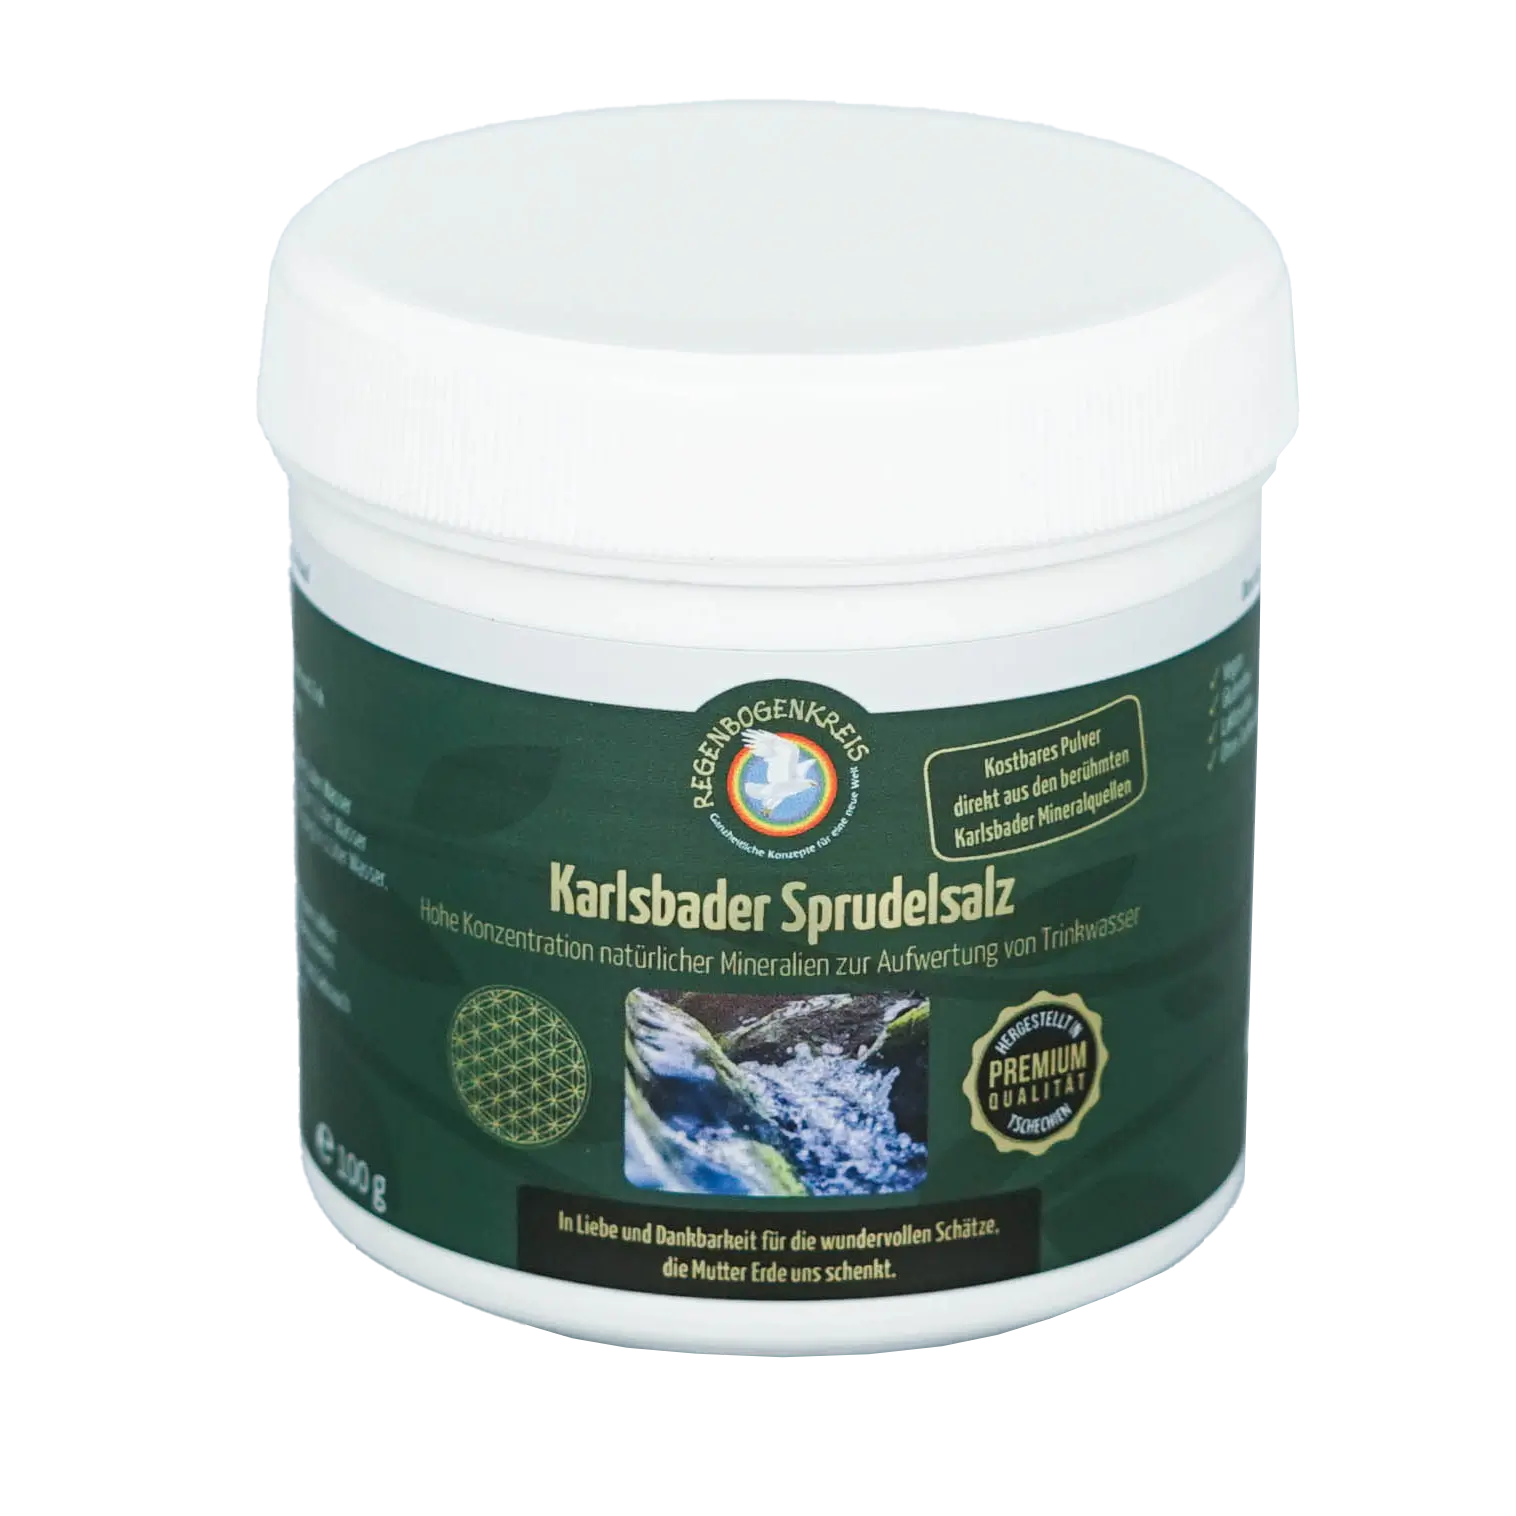 Karlsbader Sprudelsalz, 100 g Image